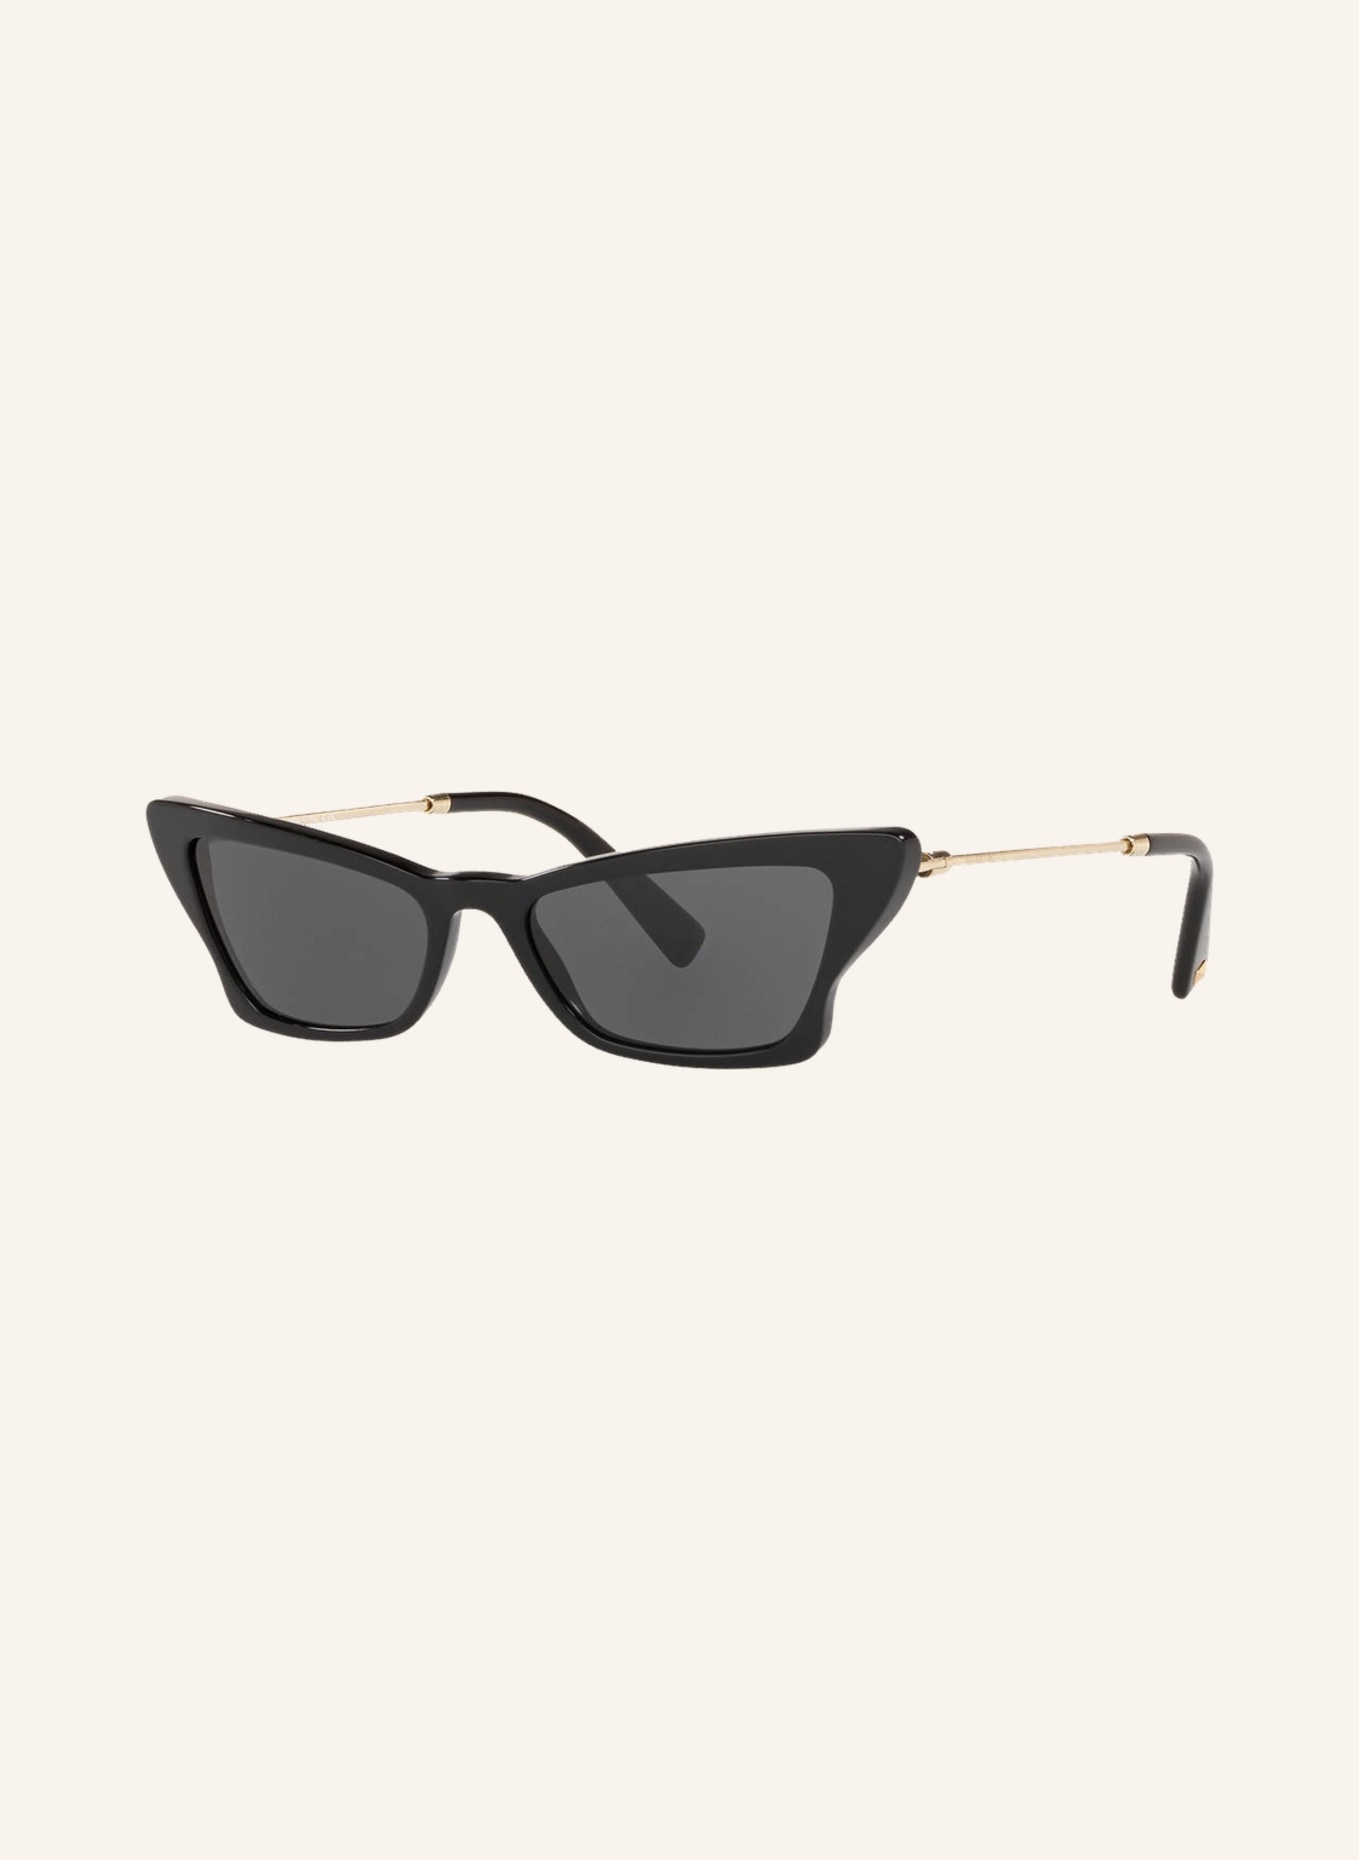 VALENTINO GARAVANI Sunglasses VA 4062, Color: 500187 - BLACK/ GRAY (Image 1)